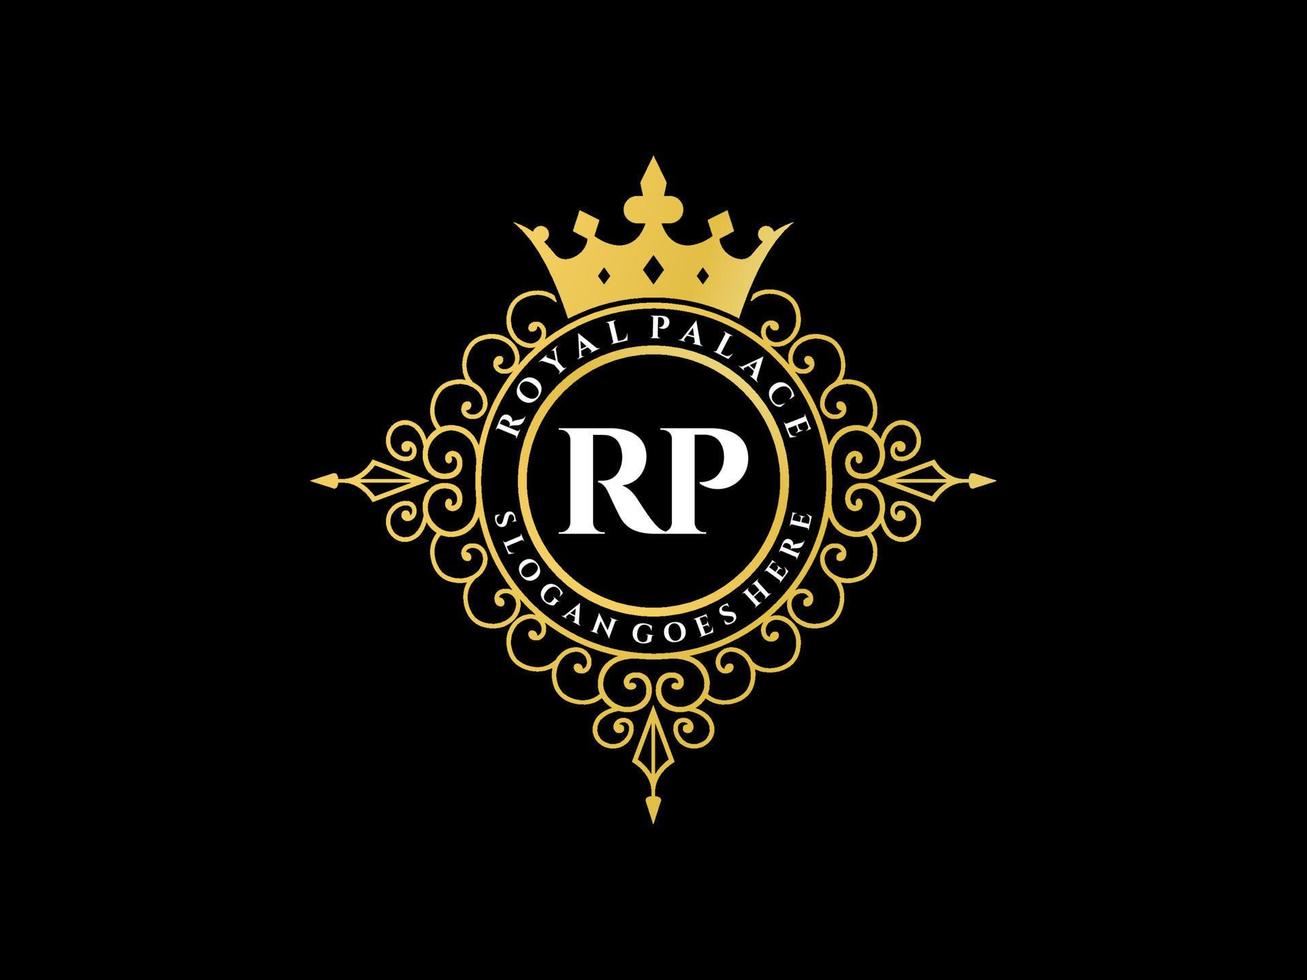 lettre rp logo victorien de luxe royal antique avec cadre ornemental. vecteur